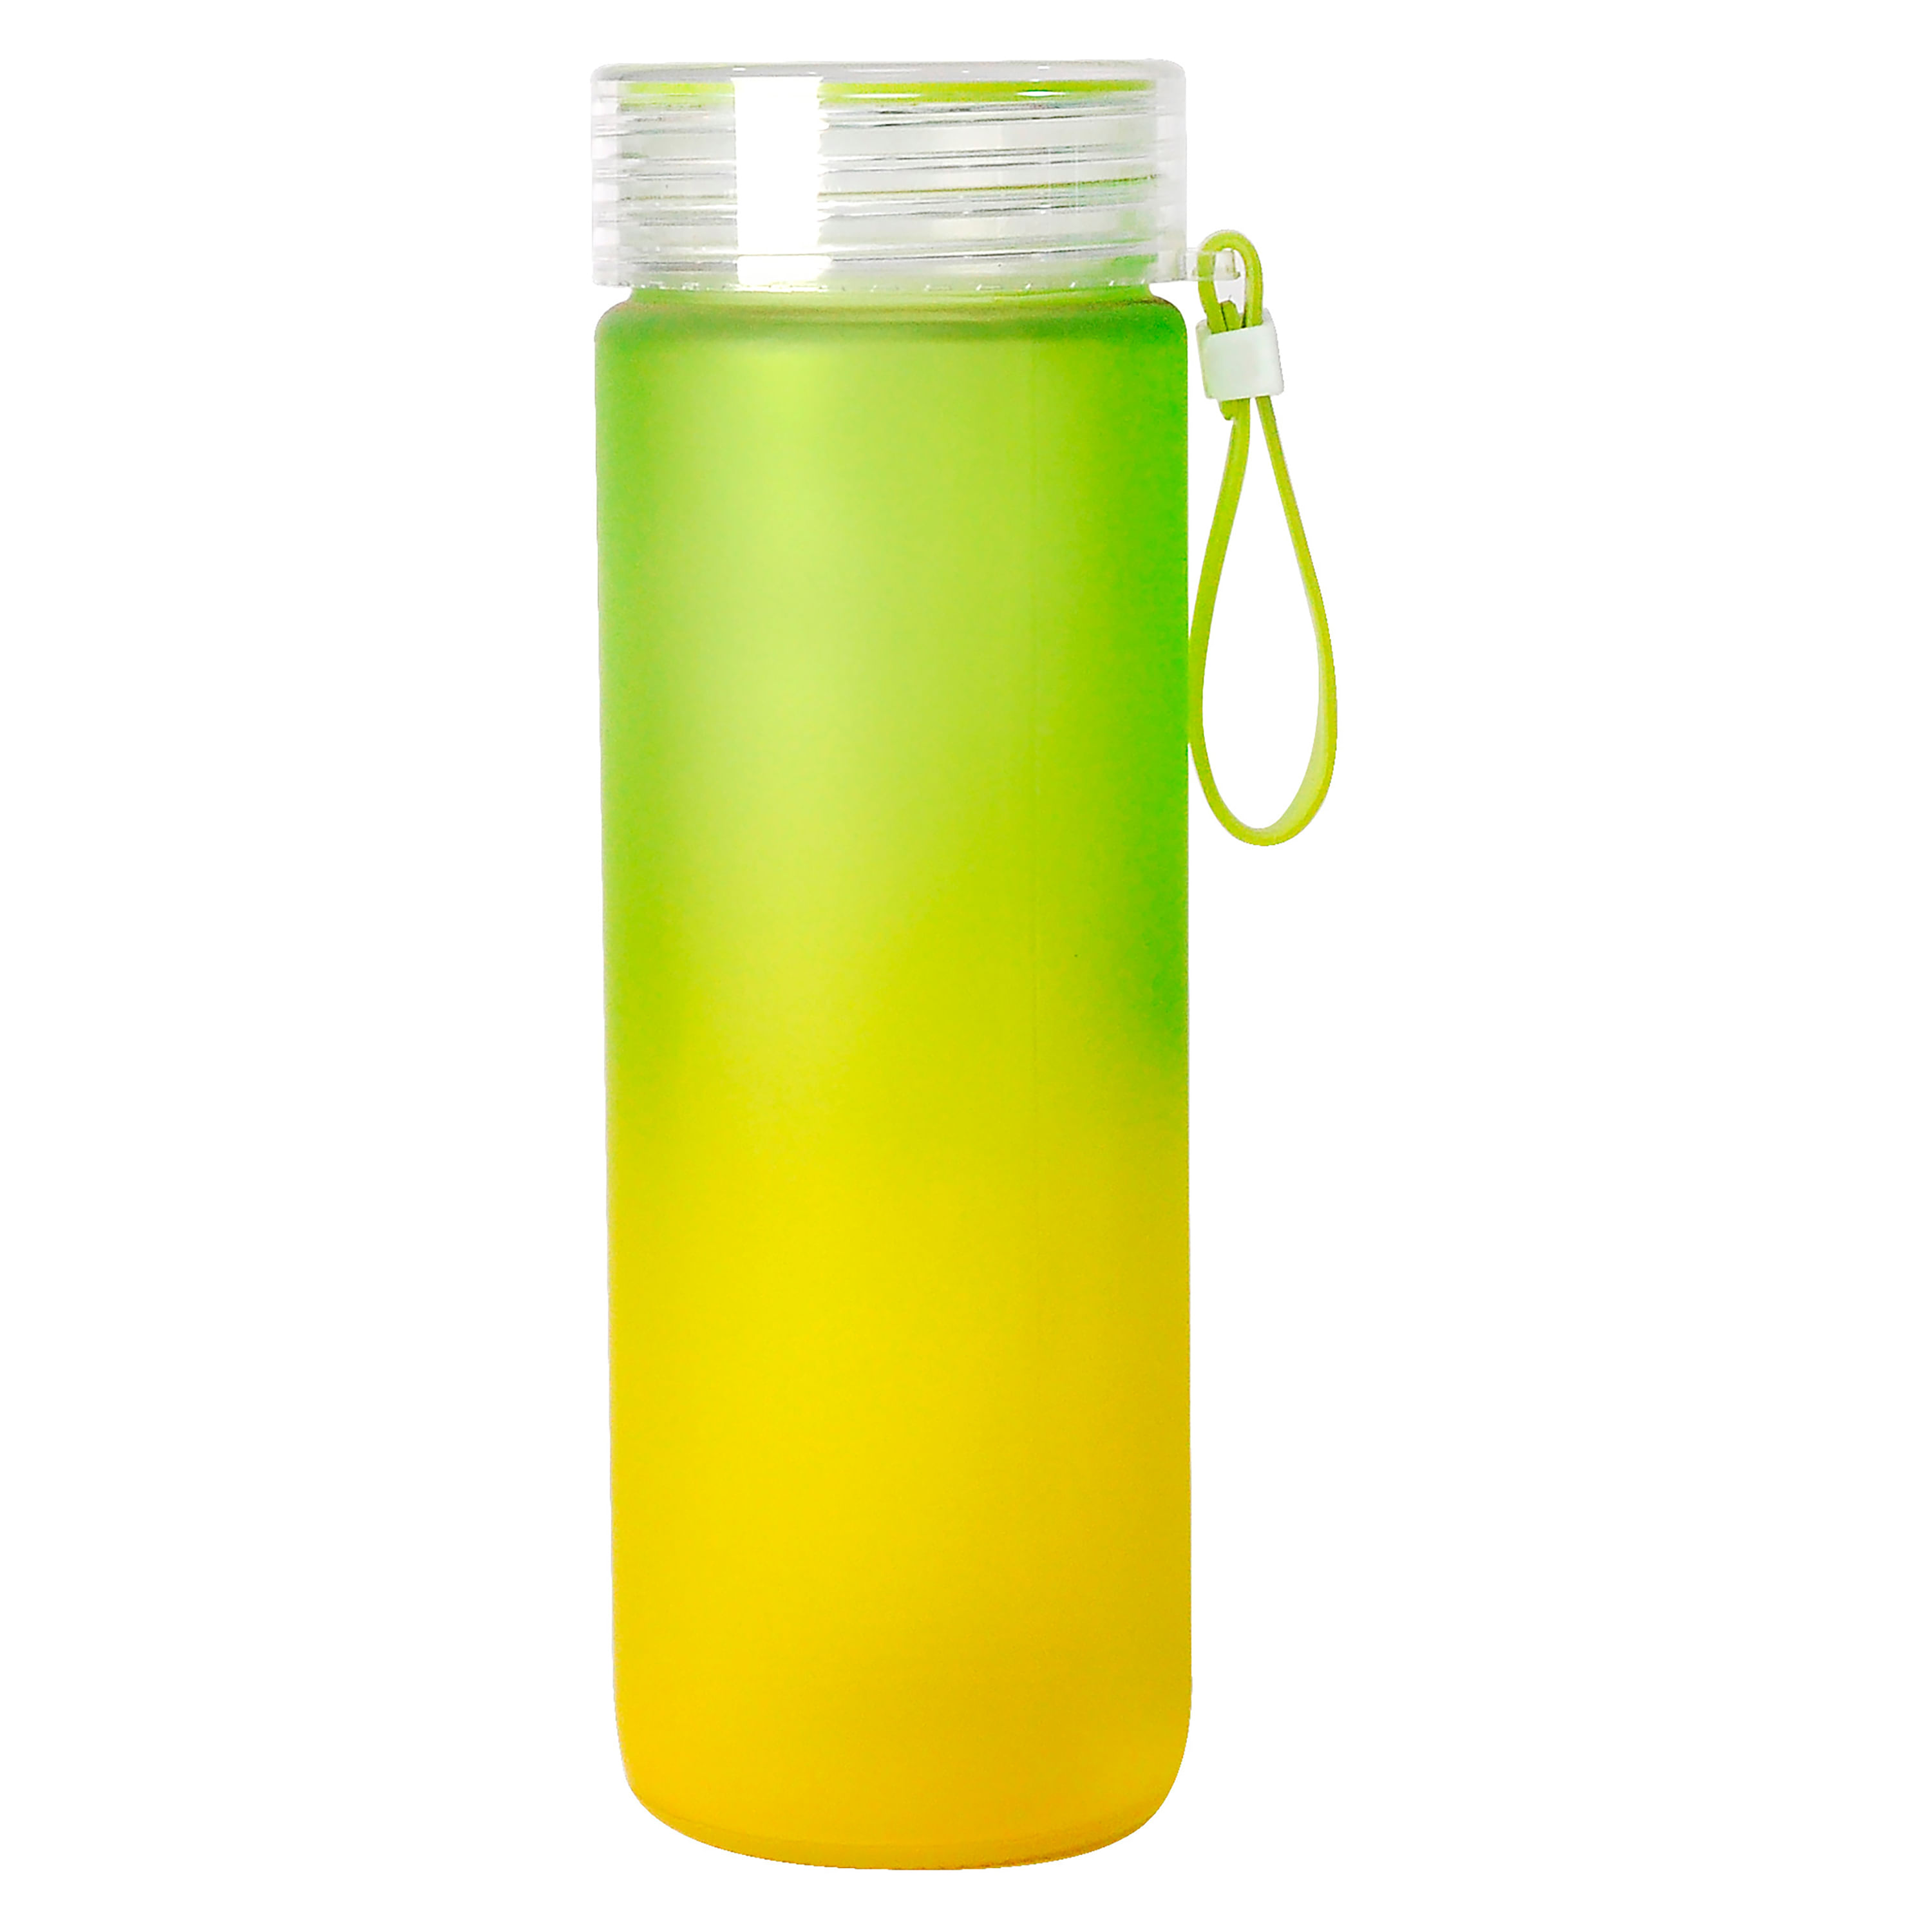 ▷Jarras y botellas ⚡Botella de cristal con tapón para agua 500ml 6 unidades  GG929⚡ Mejor precio!